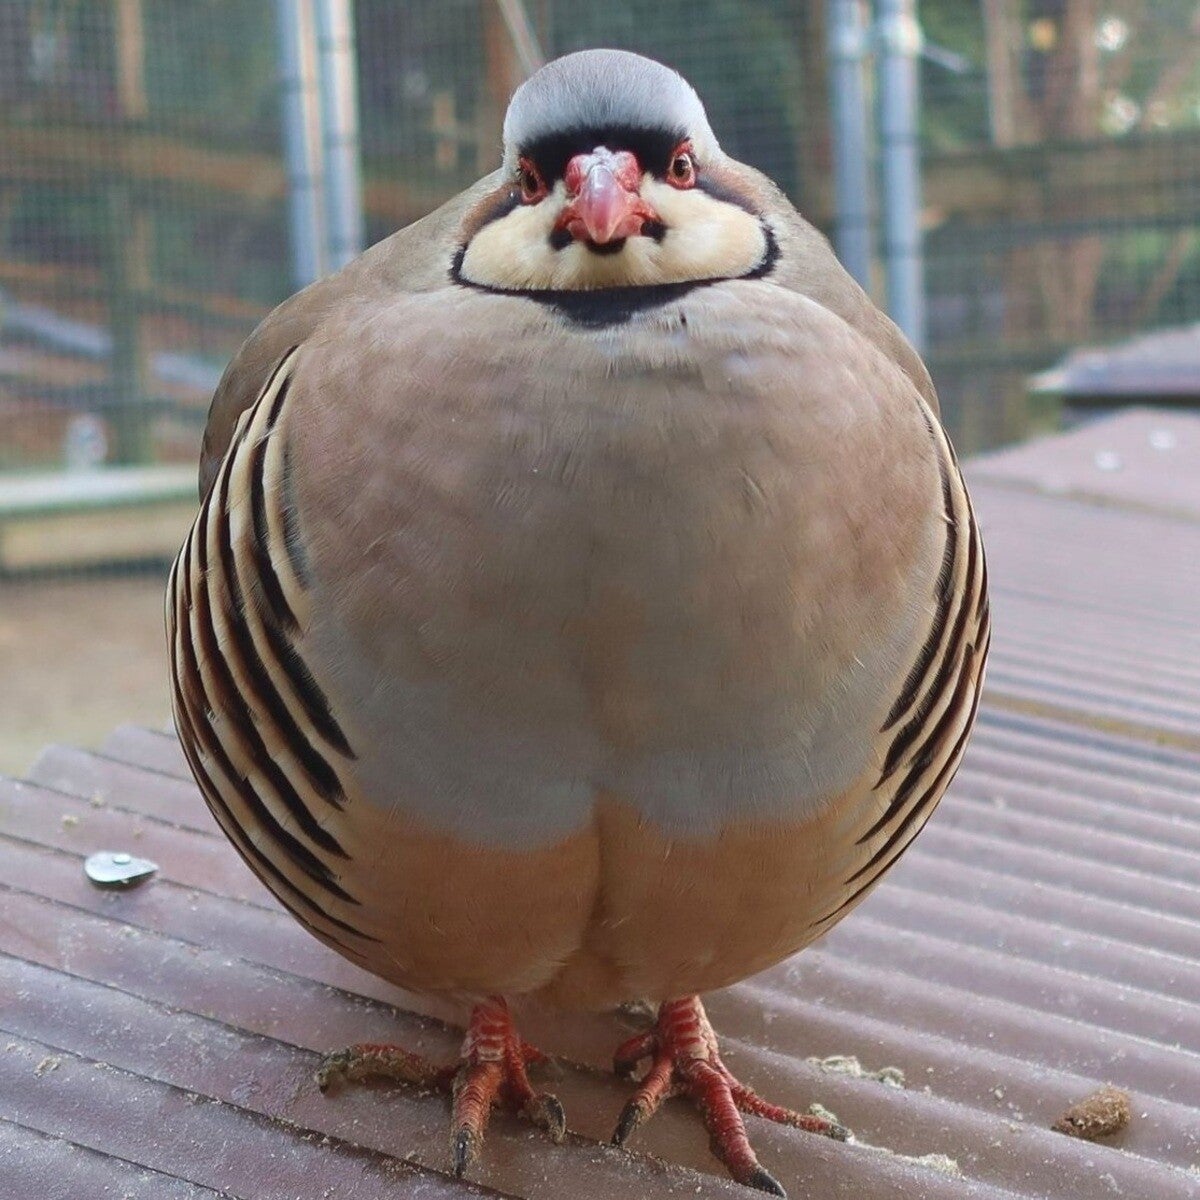 【ぼくって、こんなに丸いのか…】島根県・松江フォーゲルパークのまん丸すぎる鳥「イワシャコ」キーホルダー登場に「たまらない丸さ」「そっくりでほっこり」の声